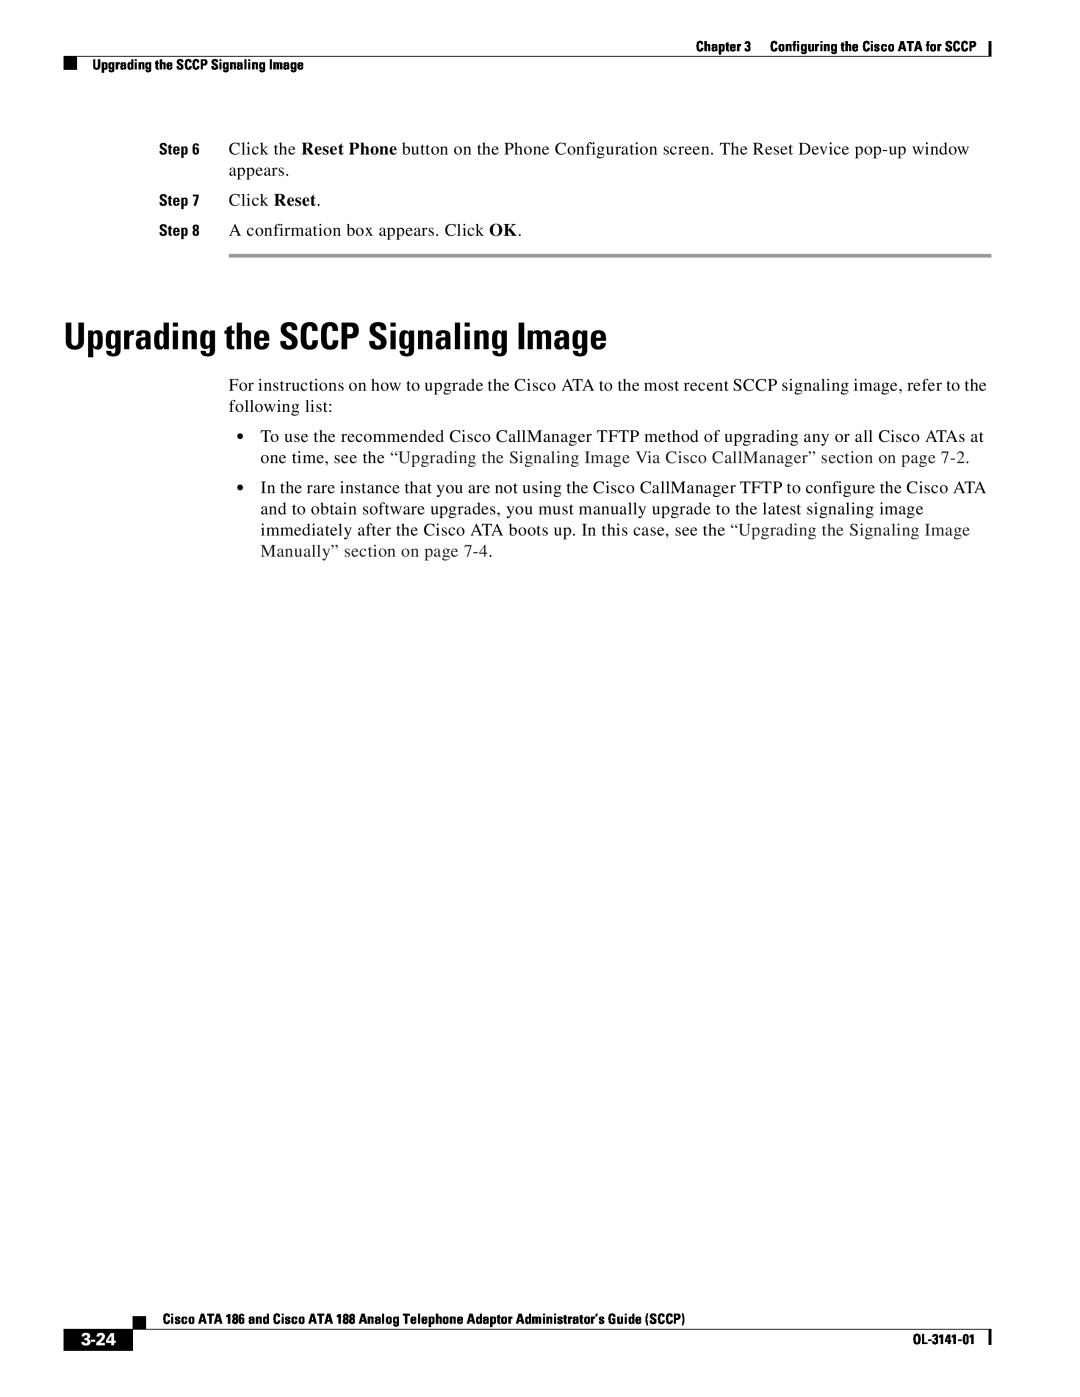 Cisco Systems ATA 186, ATA 188 manual Upgrading the SCCP Signaling Image, 3-24 